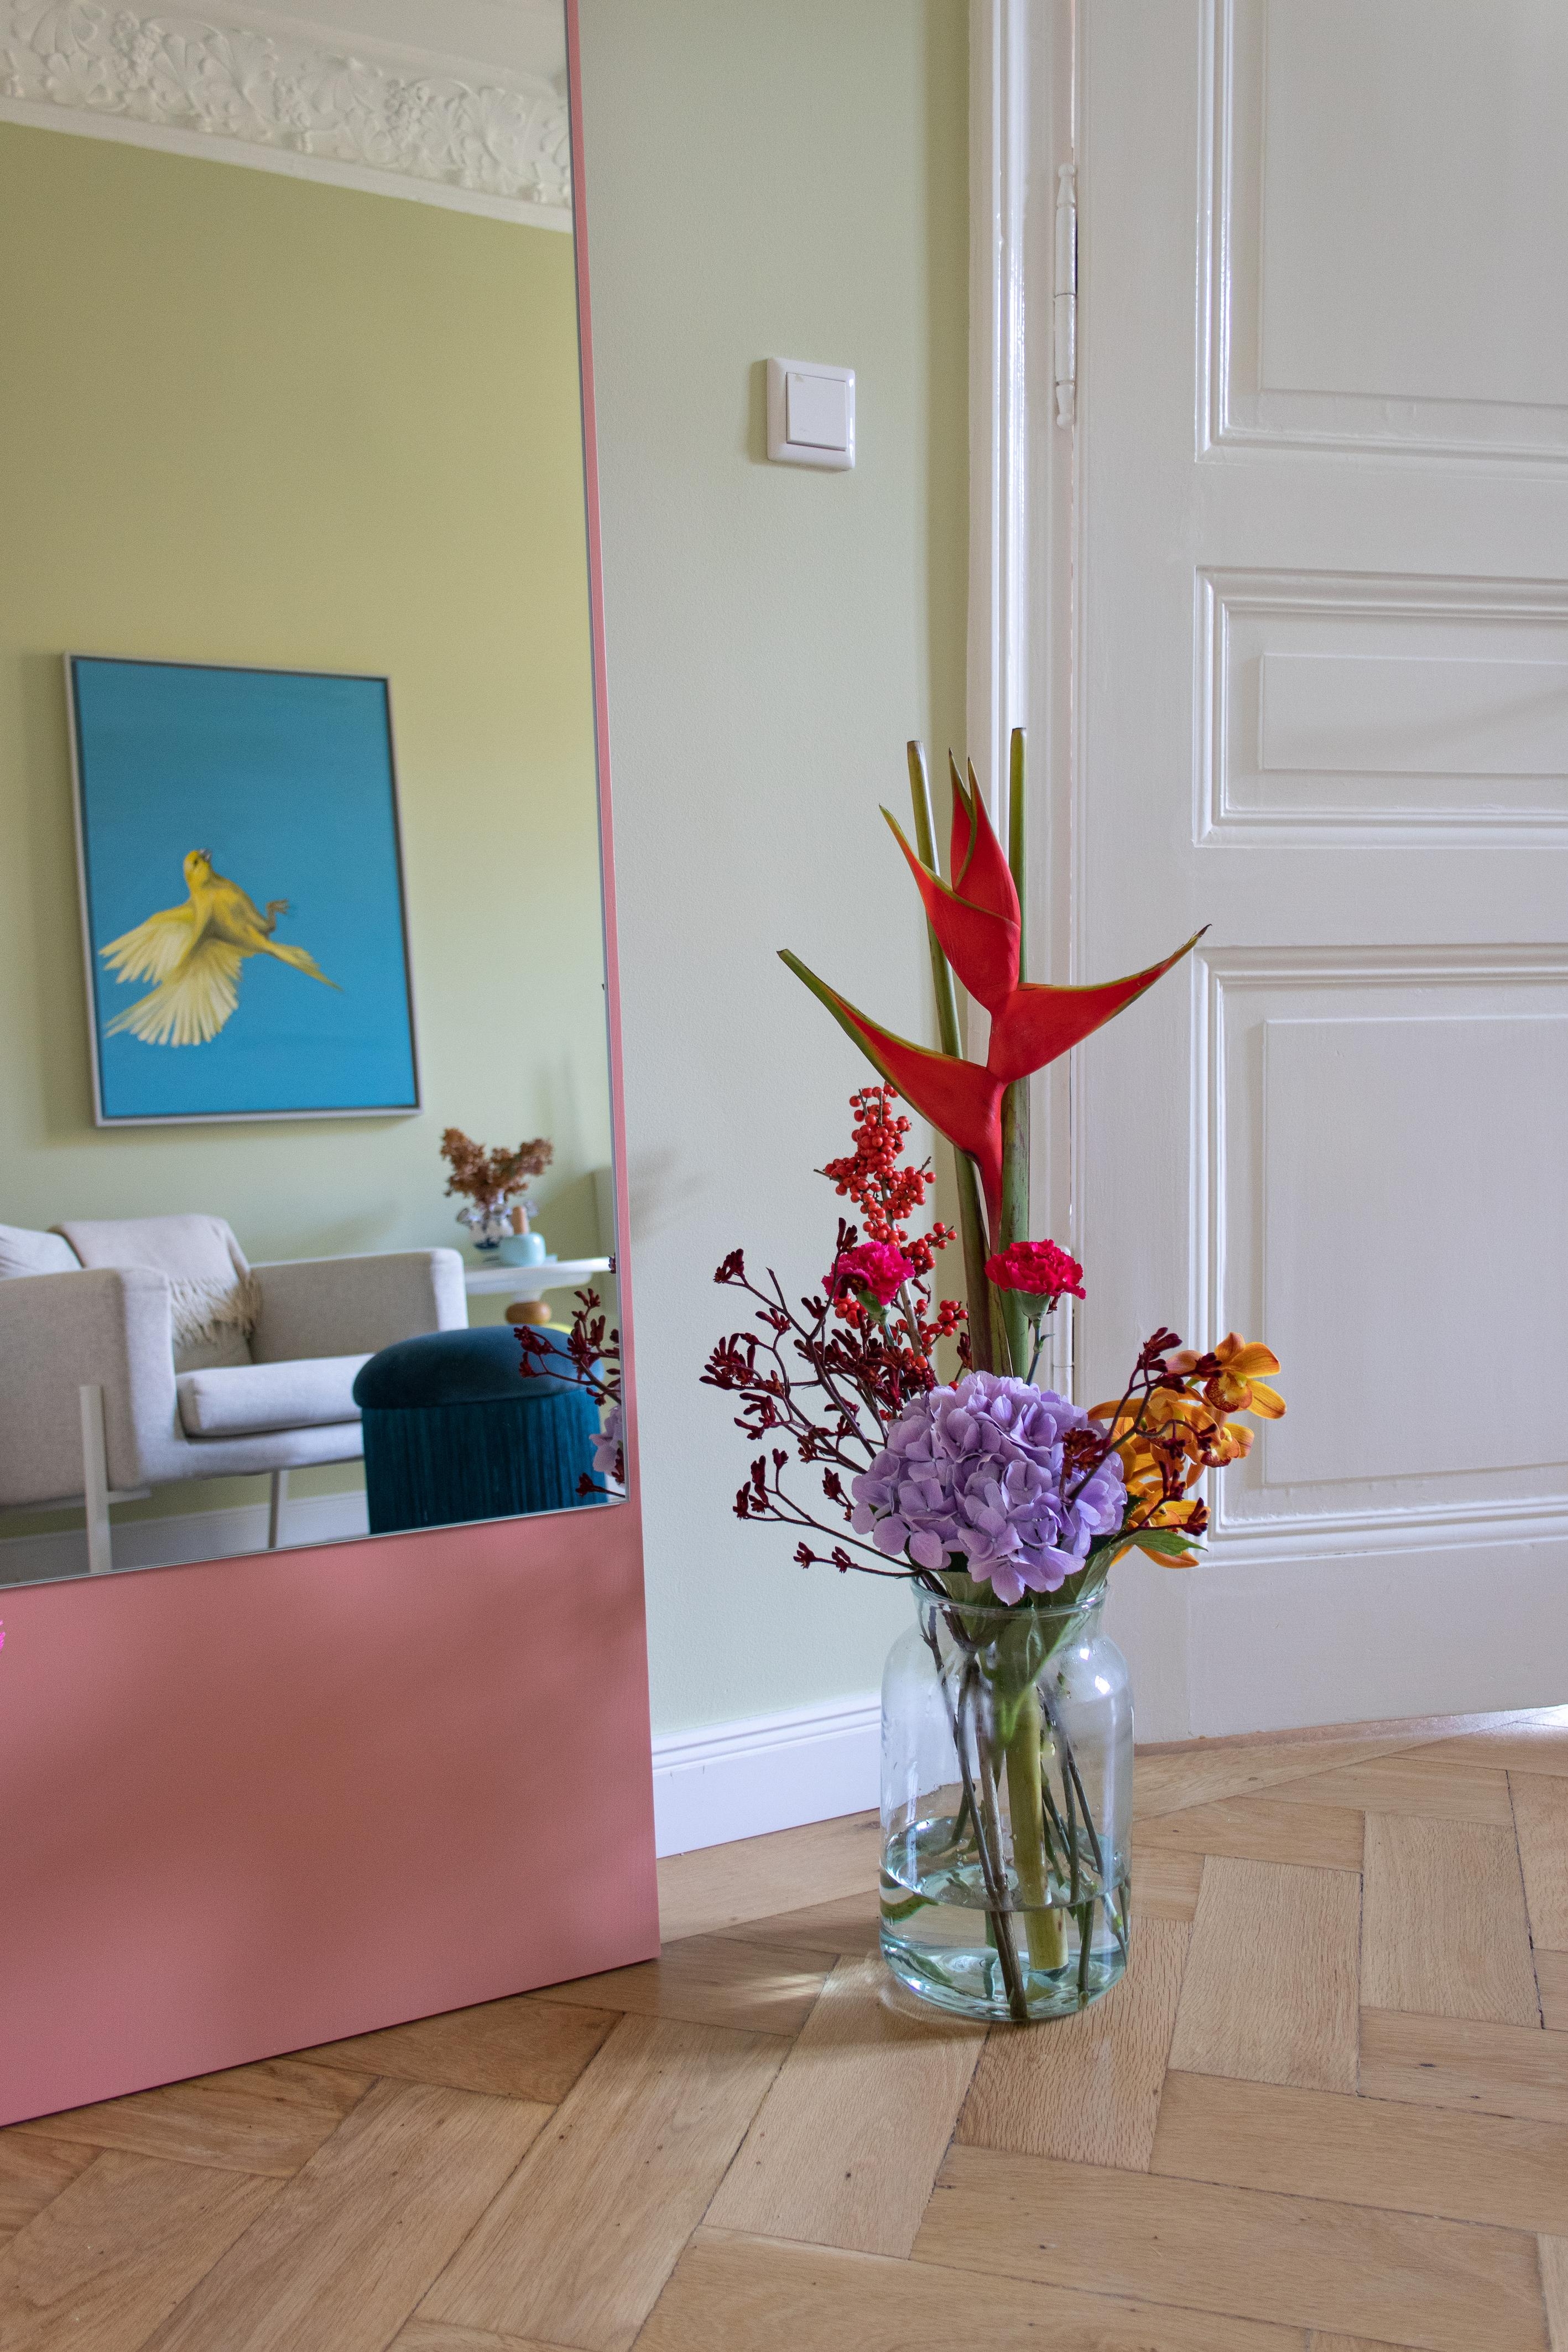 #Couchliebt #Blumen #Farbenfroh #Skandistyle #Altbau #Stuck #Sessel #Parkett #Pink #Grün #Wandfarbe